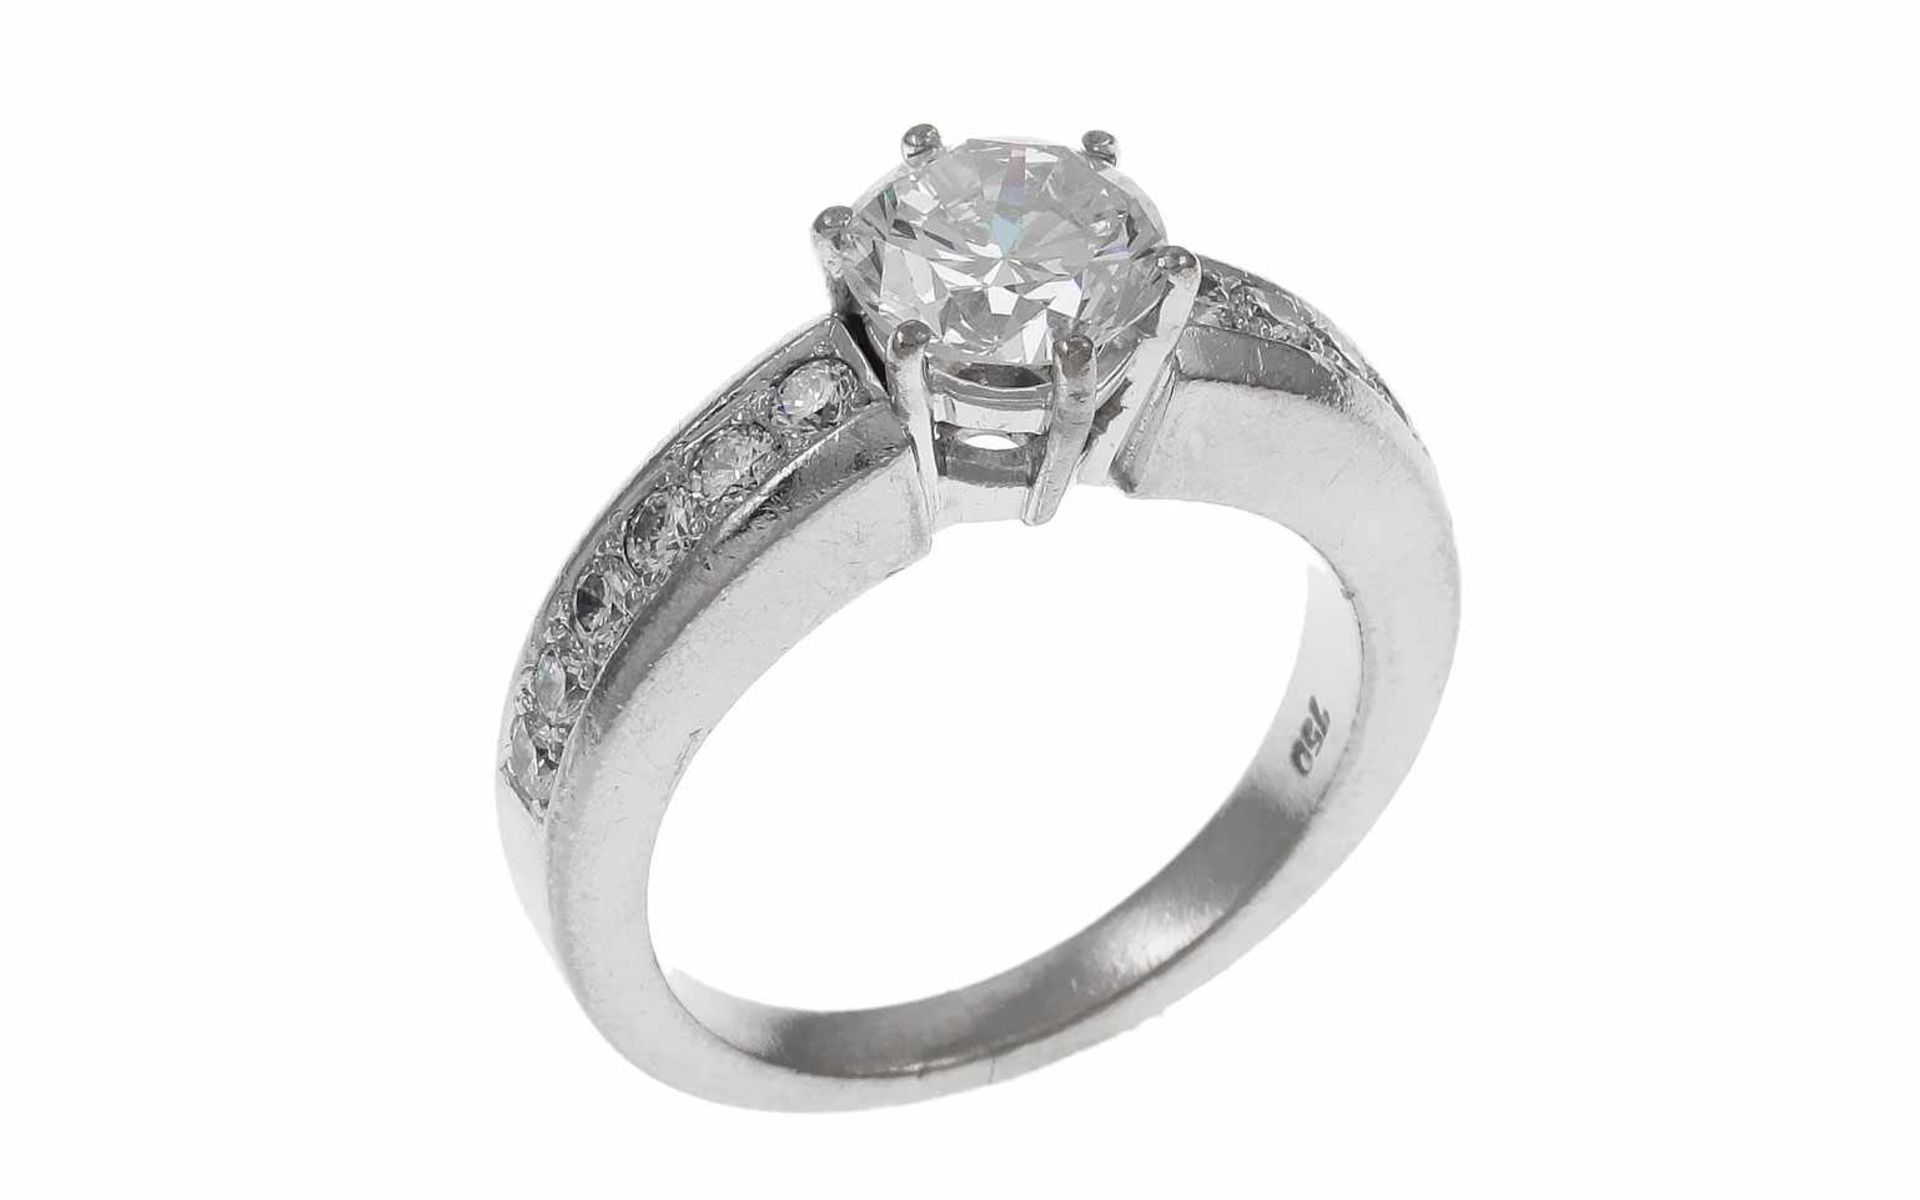 RingRing 750/- Weißgold mit Diamanten, Ringgröße ca. 55, 1 Diamant ca. 1,54 ct, H/vs, 12 Diamanten